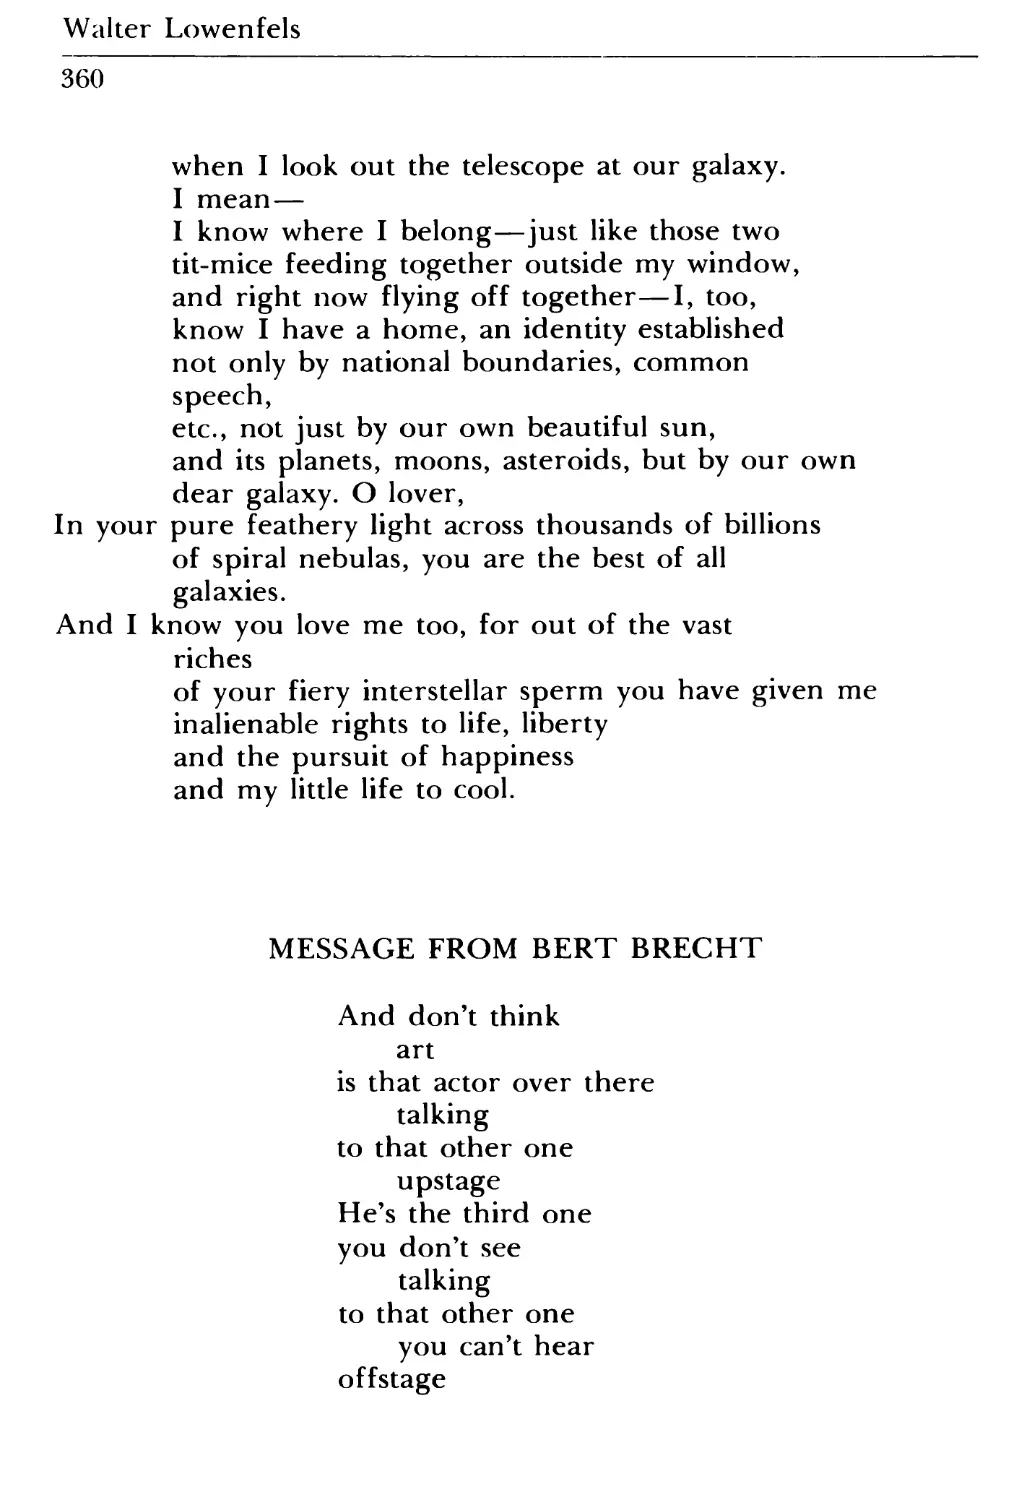 Message from Bert Brecht